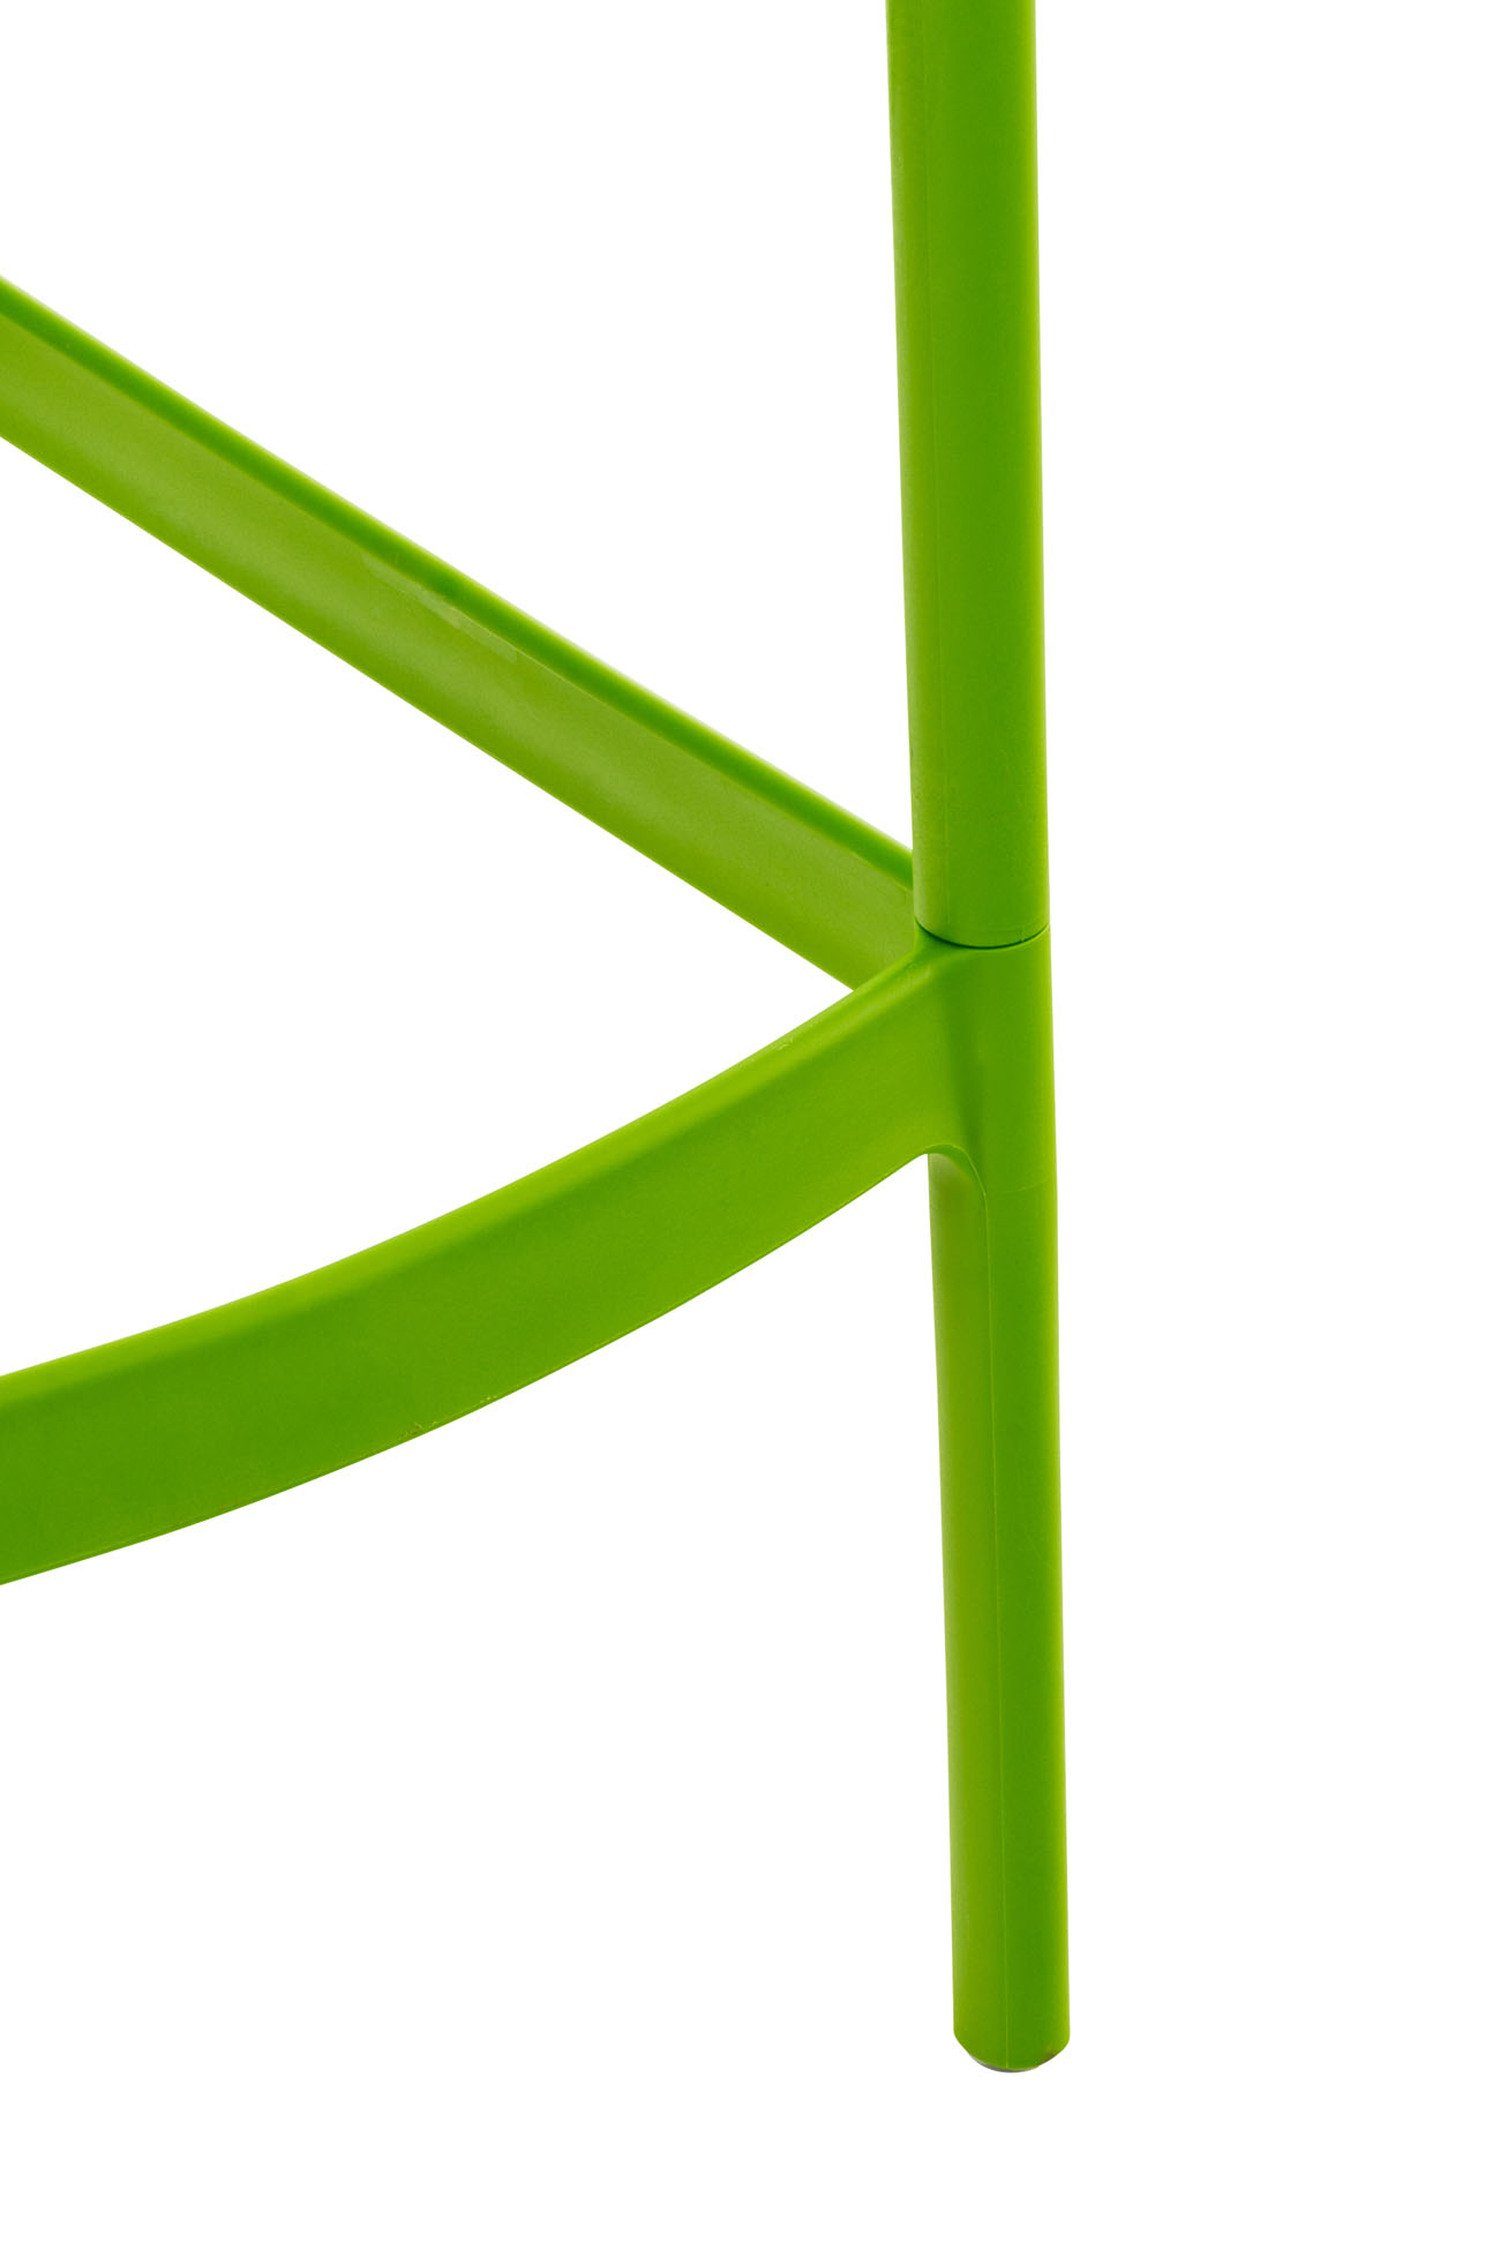 Sitzfläche: Barhocker für Fußstütze angenehmer Kunststoff Theke - Grün Kunststoff Gestell (mit TPFLiving & - Hocker Küche), Air